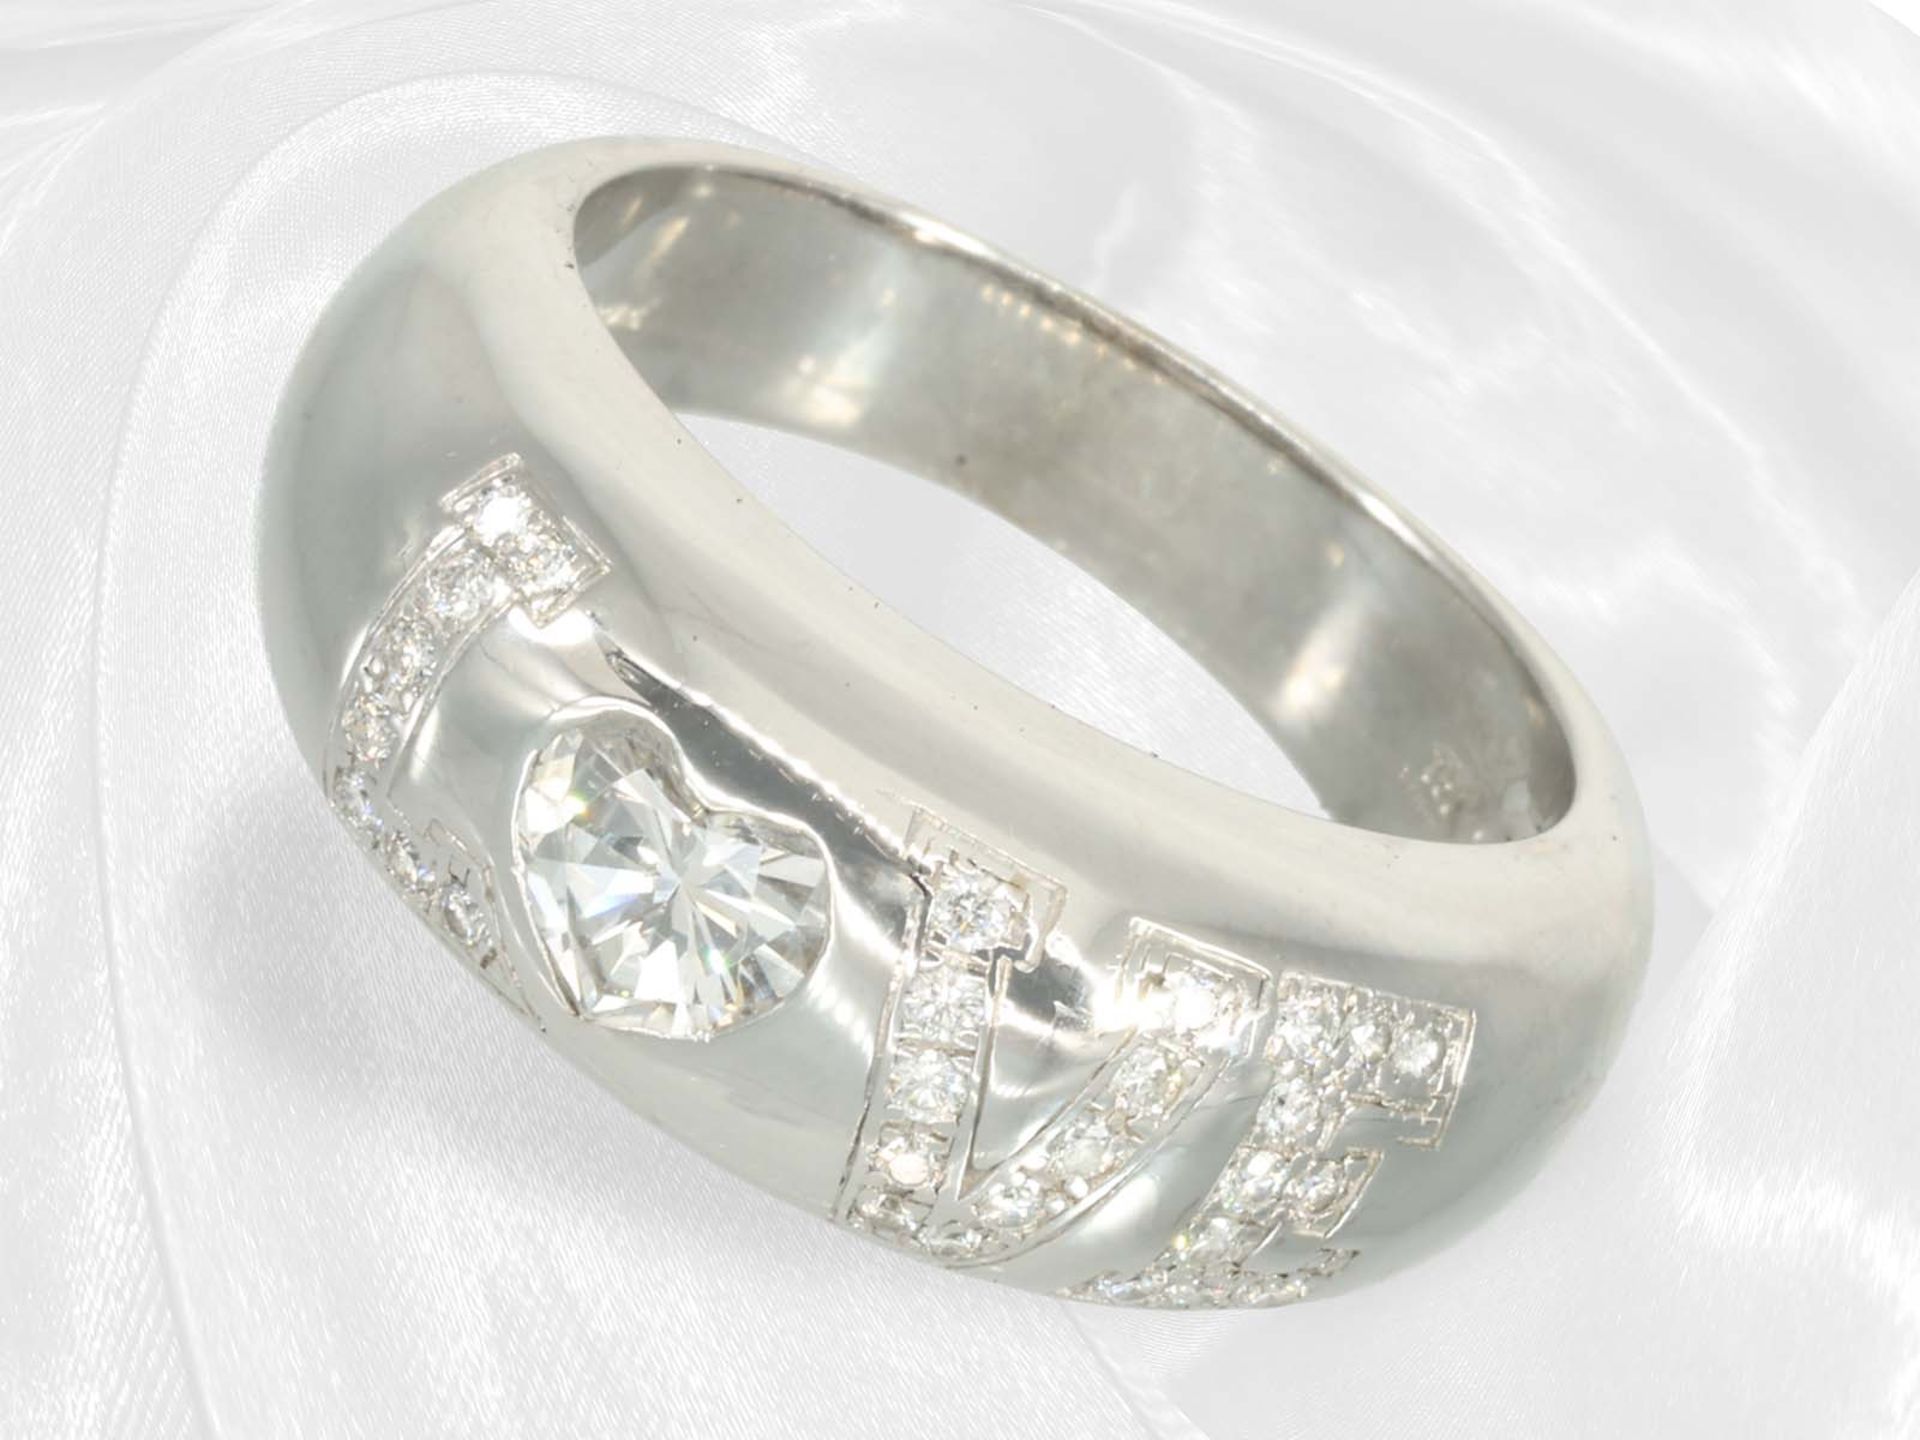 Ring: Hochwertiger Designer-Weißgoldring "Love" mit Brillanten, signiert Chopard, incl. Zertifikat,1